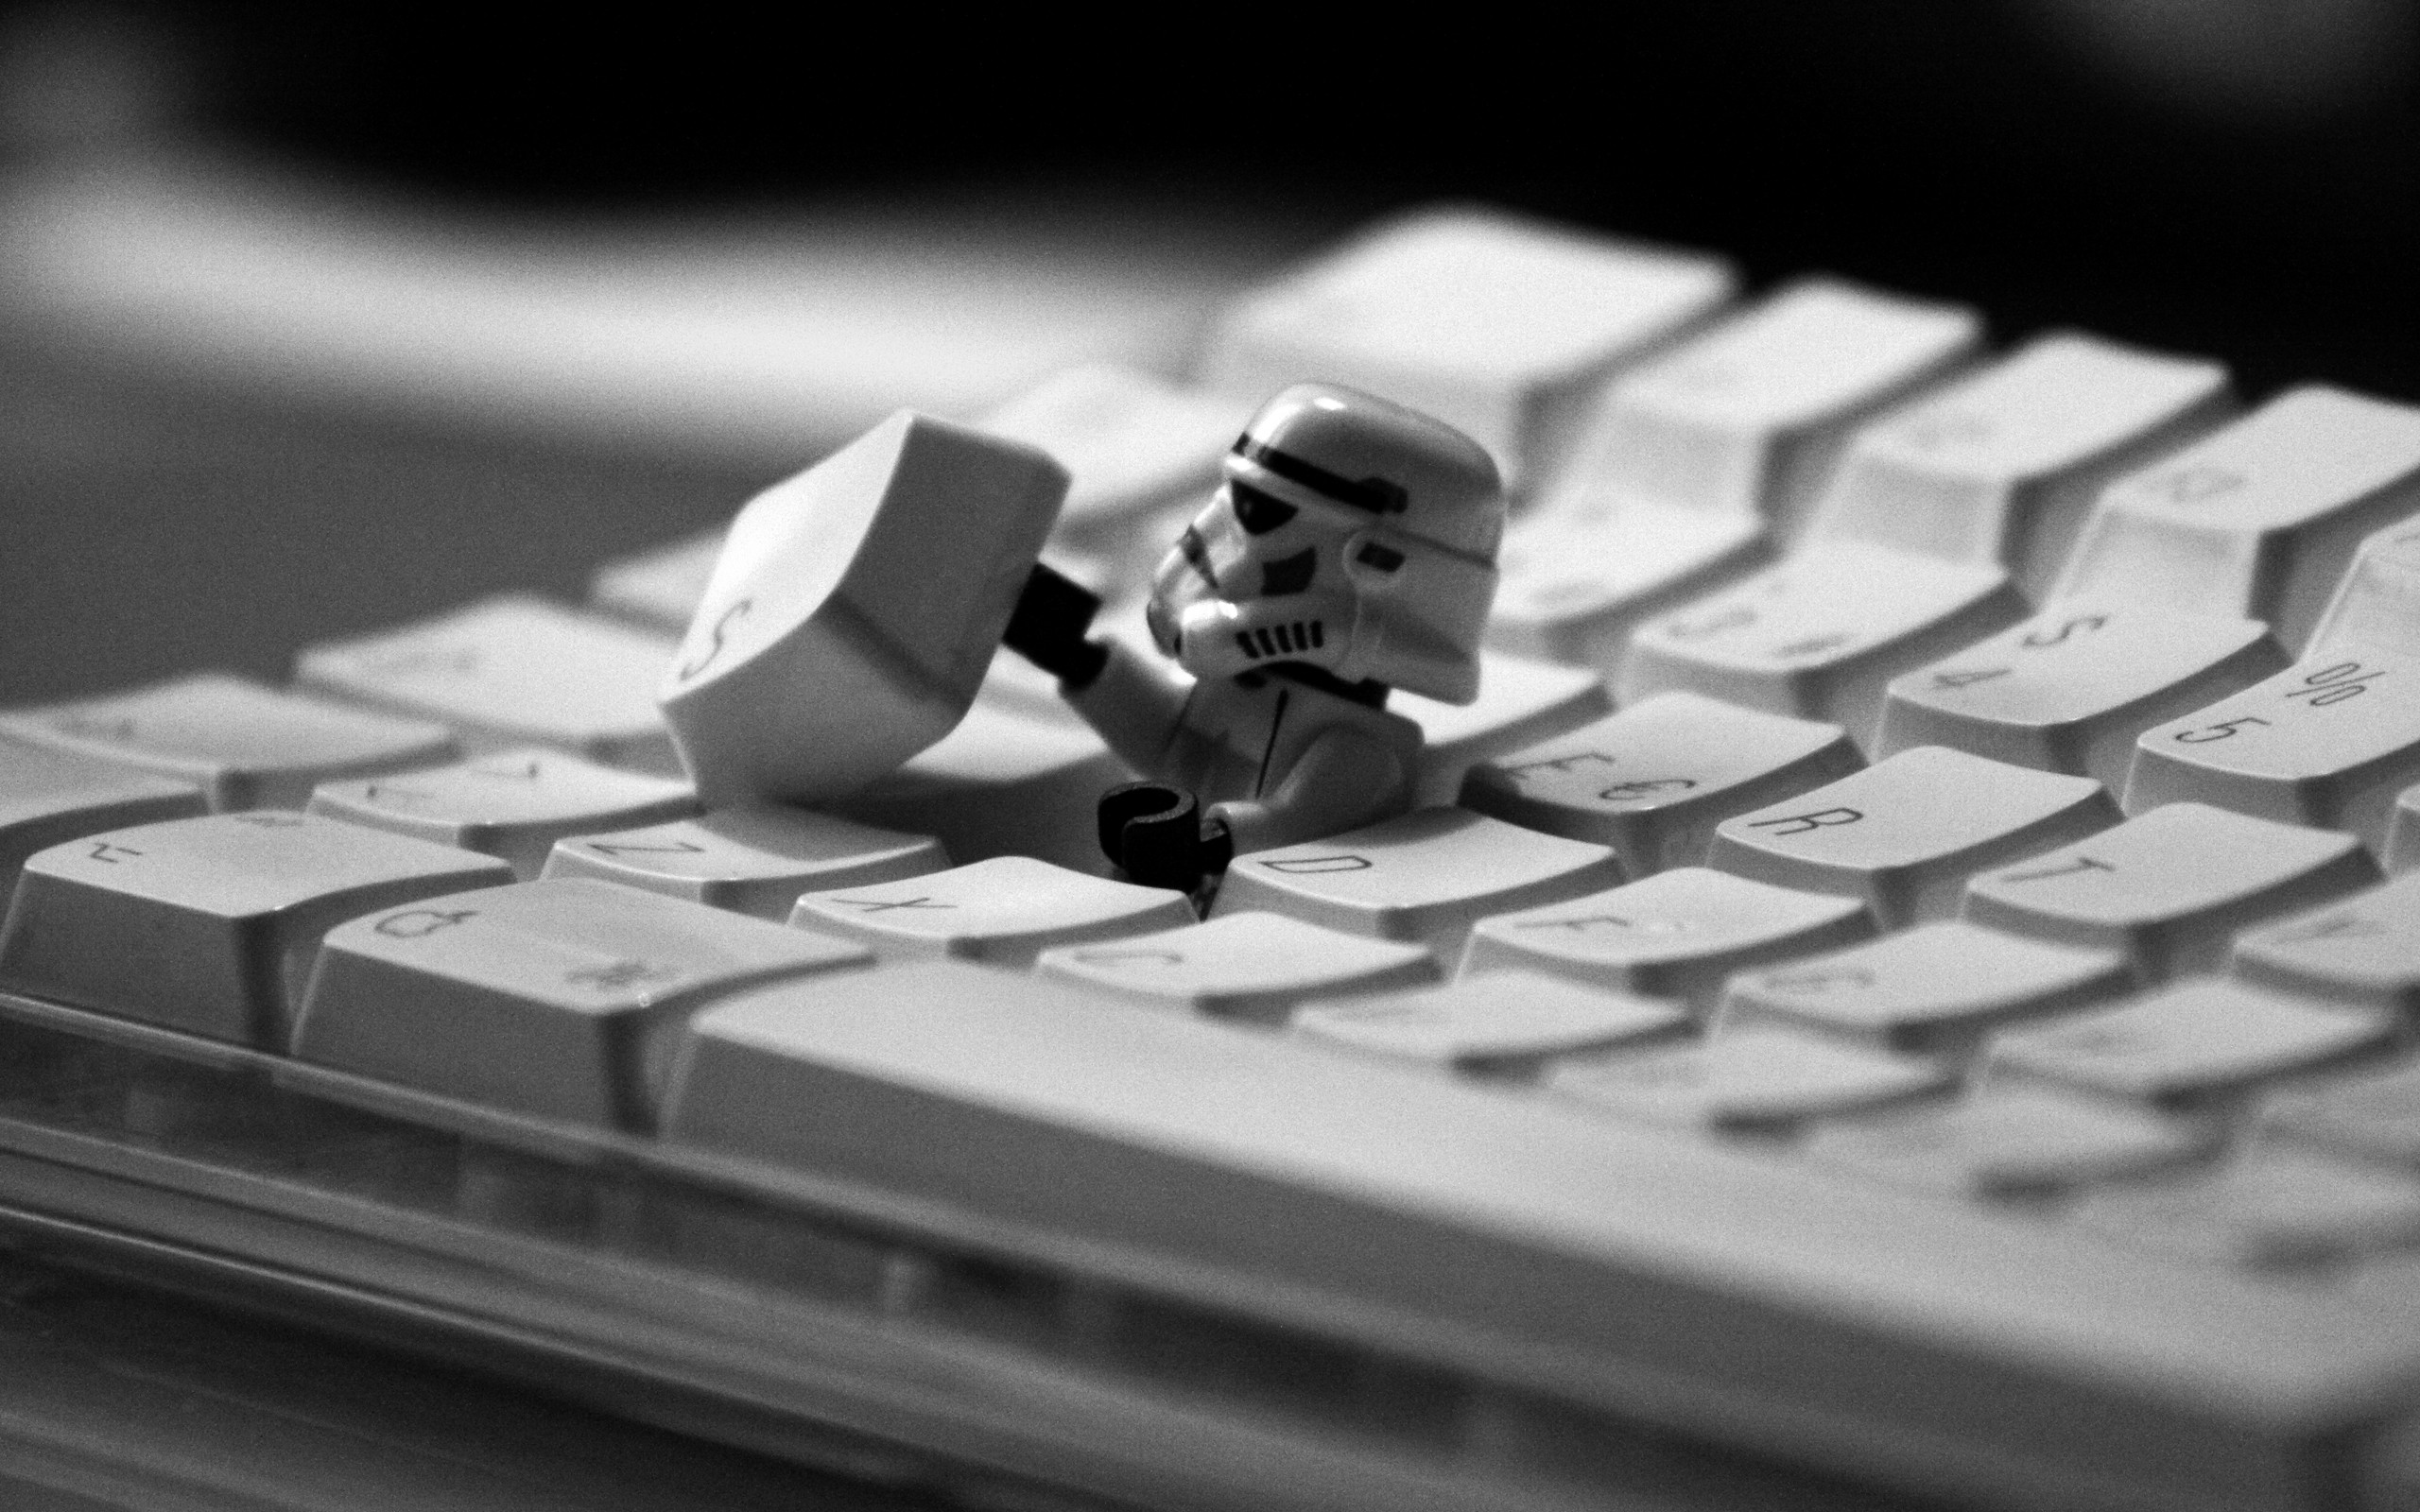 General 2560x1600 LEGO keyboards monochrome humor Imperial Stormtrooper Star Wars Humor Star Wars stormtrooper helmet figurines movie characters